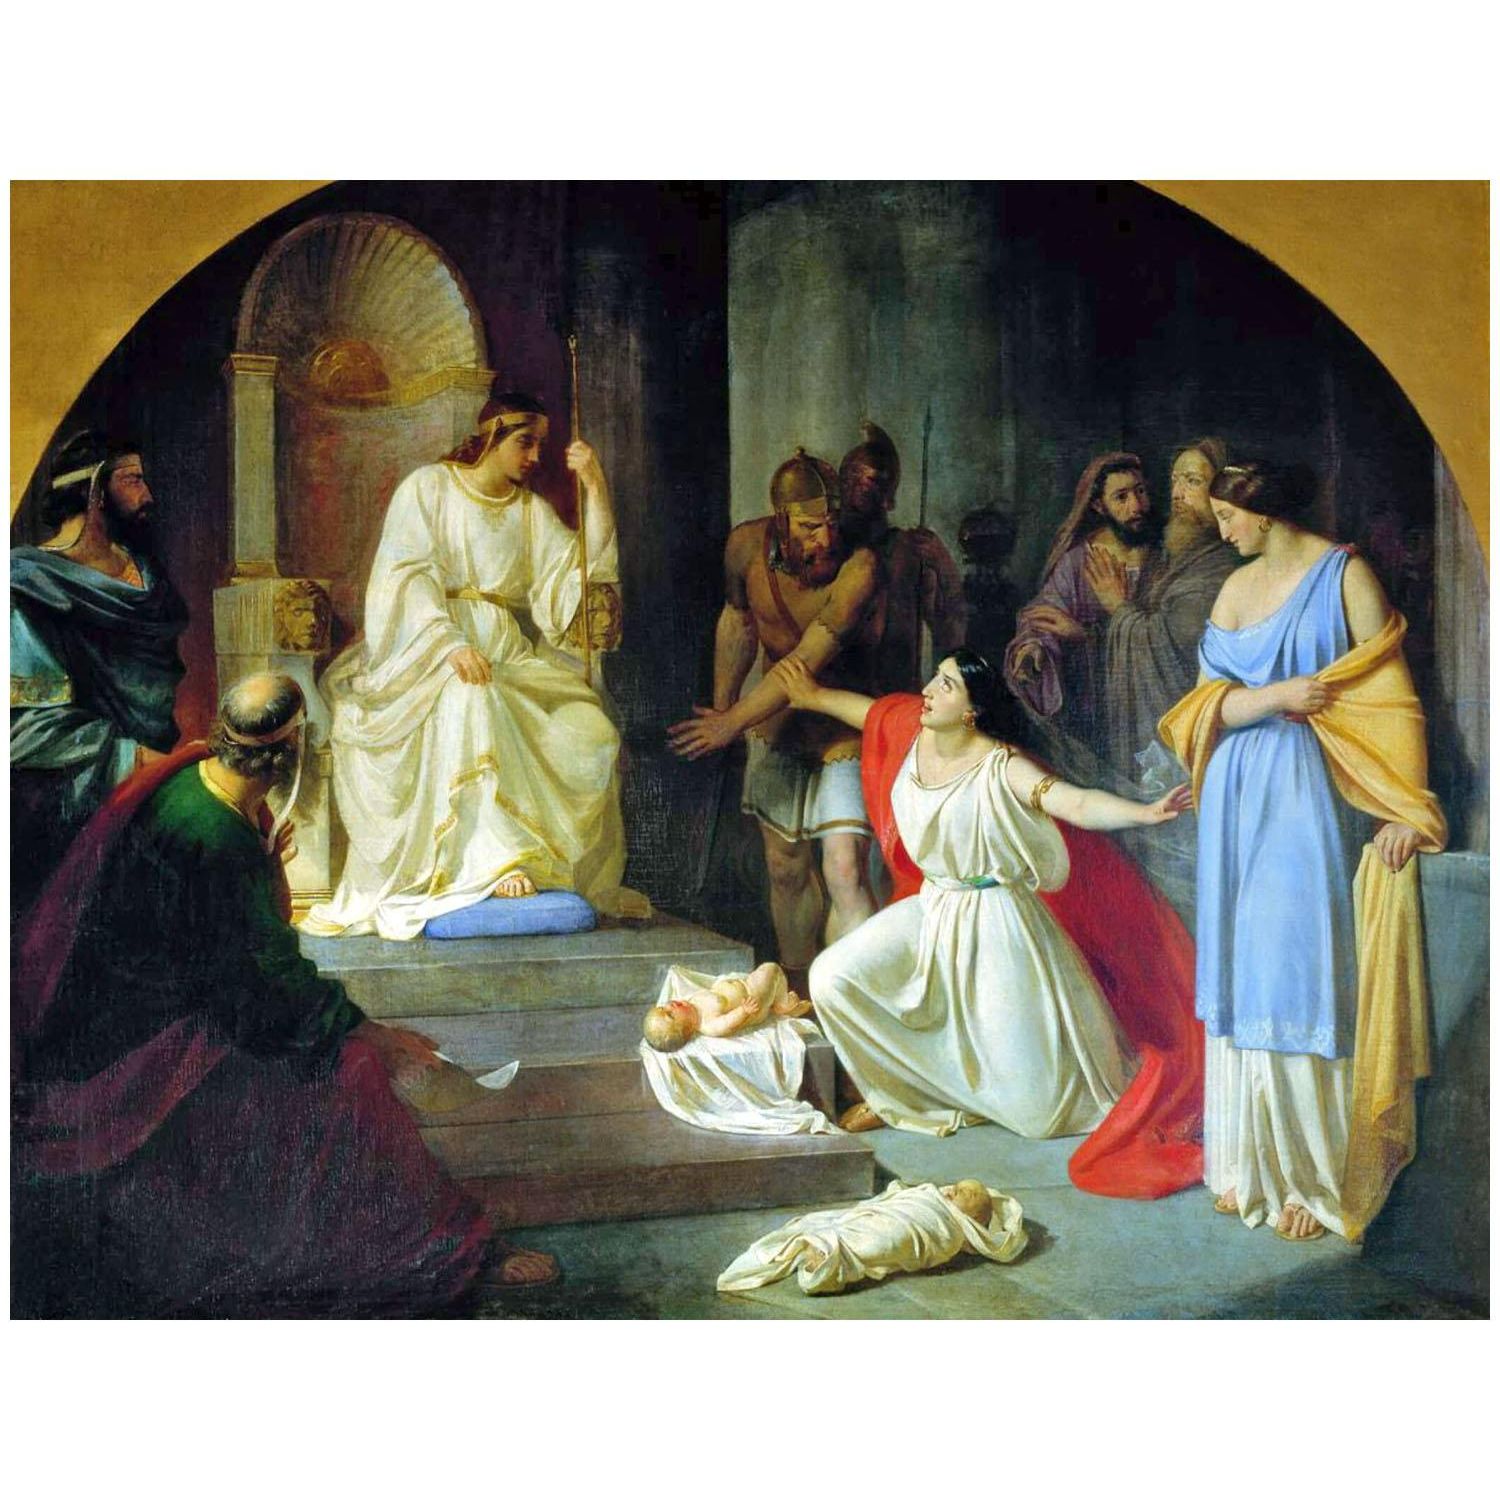 Николай Ге. Суд царя Соломона. 1854. Киевская картинная галерея